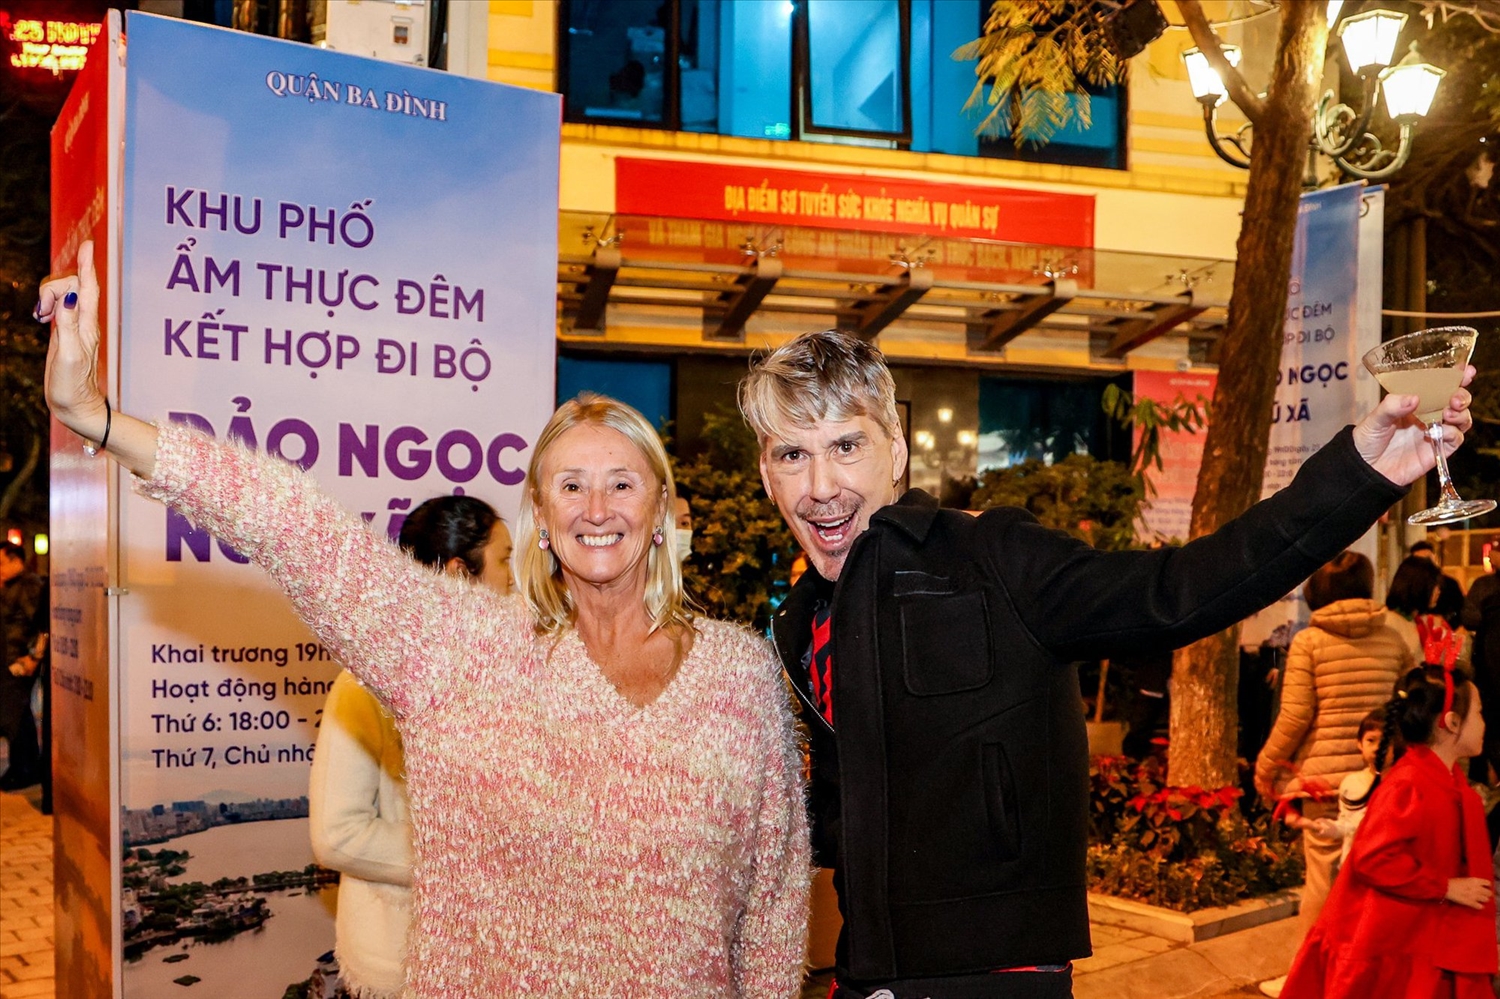 Hà Nội khai trương Khu phố ẩm thực đêm kết hợp đi bộ tại Đảo Ngọc Ngũ Xã 4